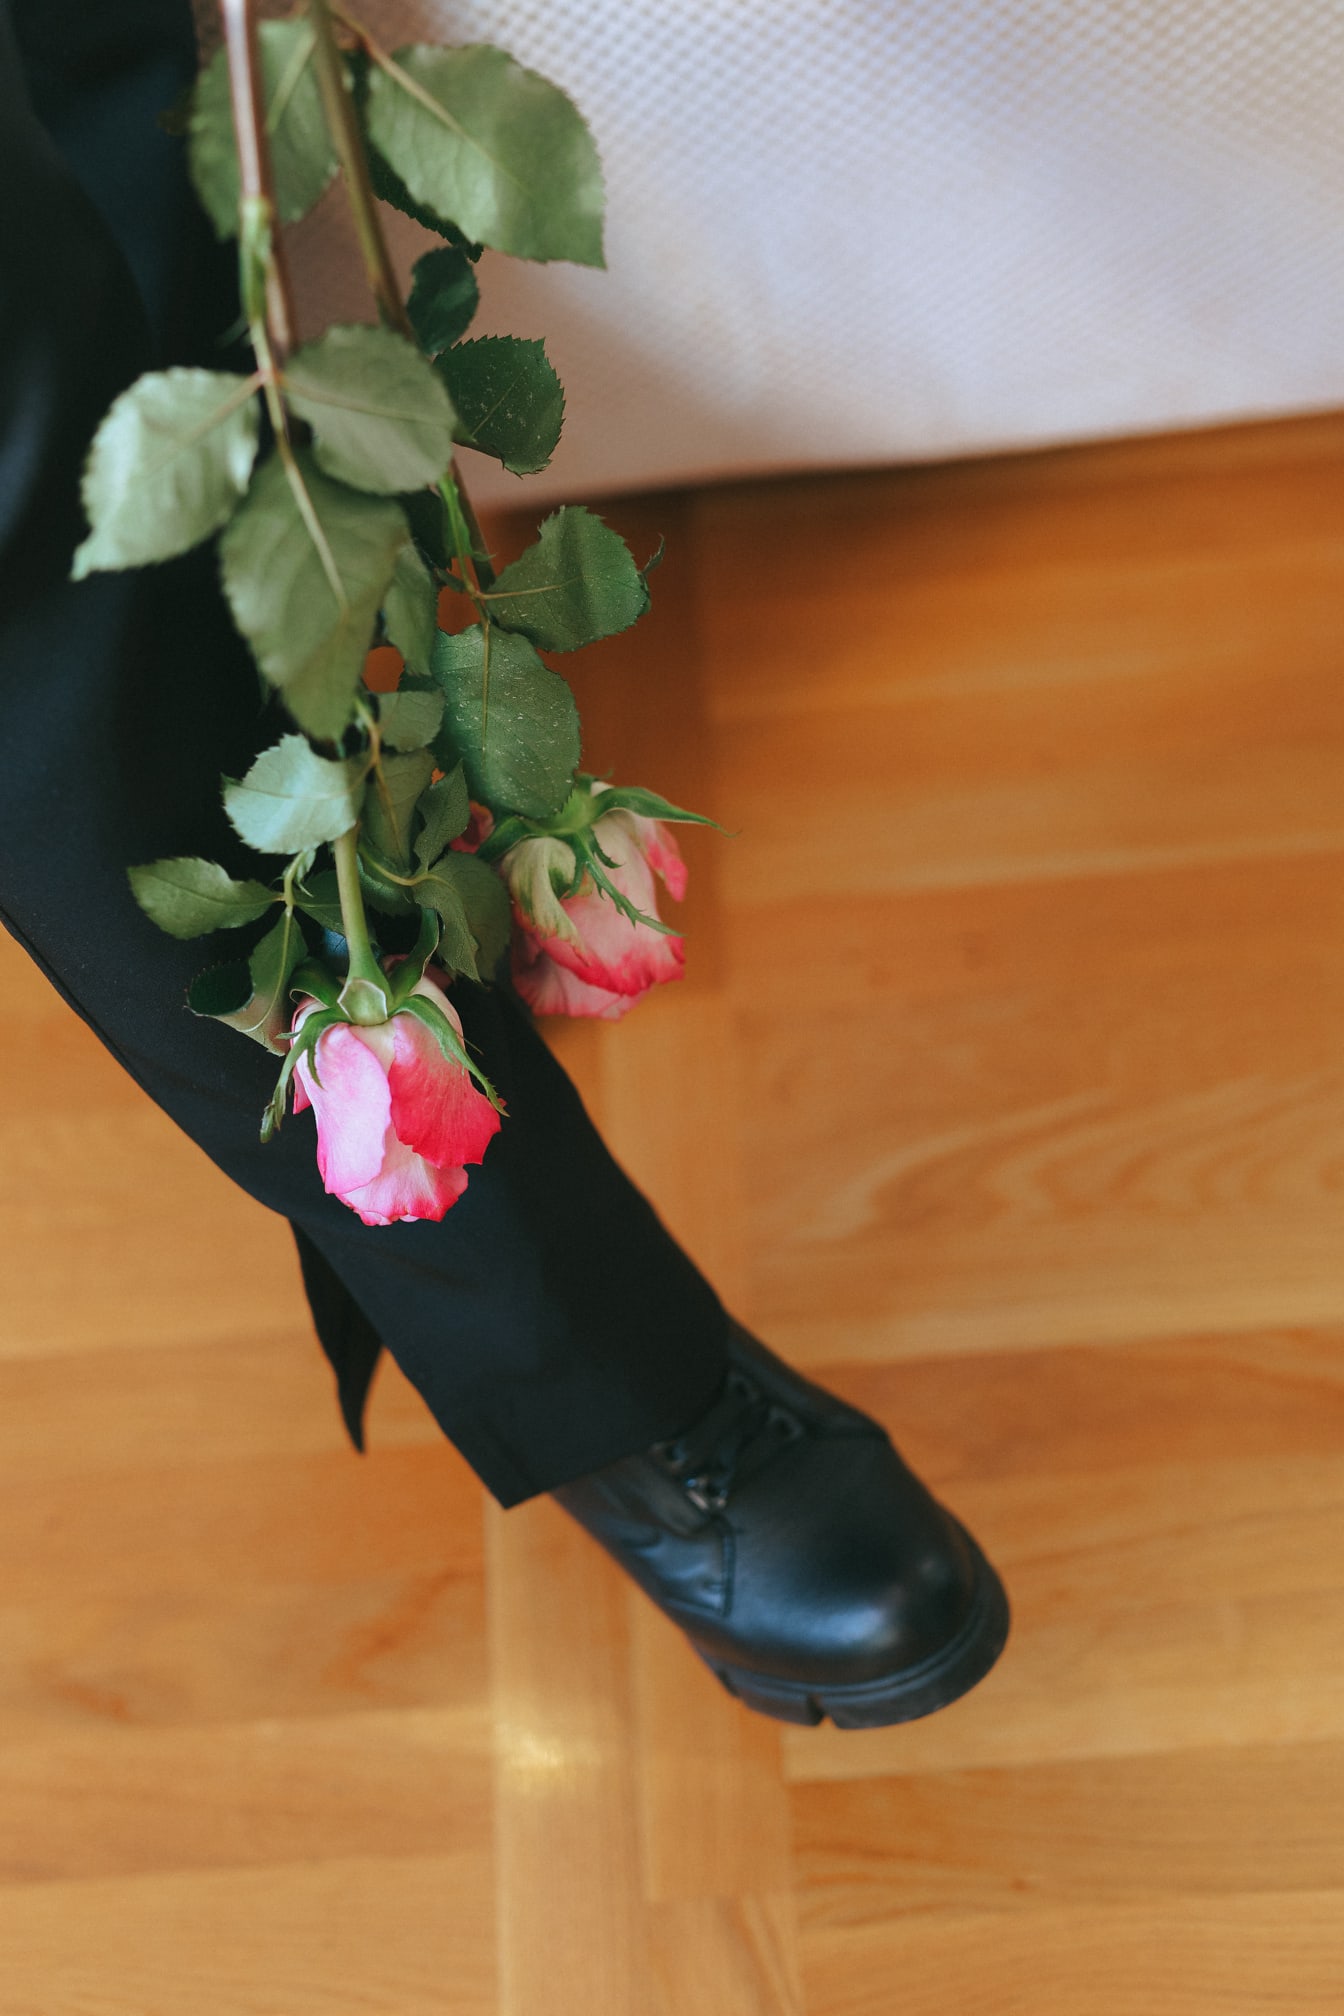 Bein mit einem Strauß rosafarbener Rosen